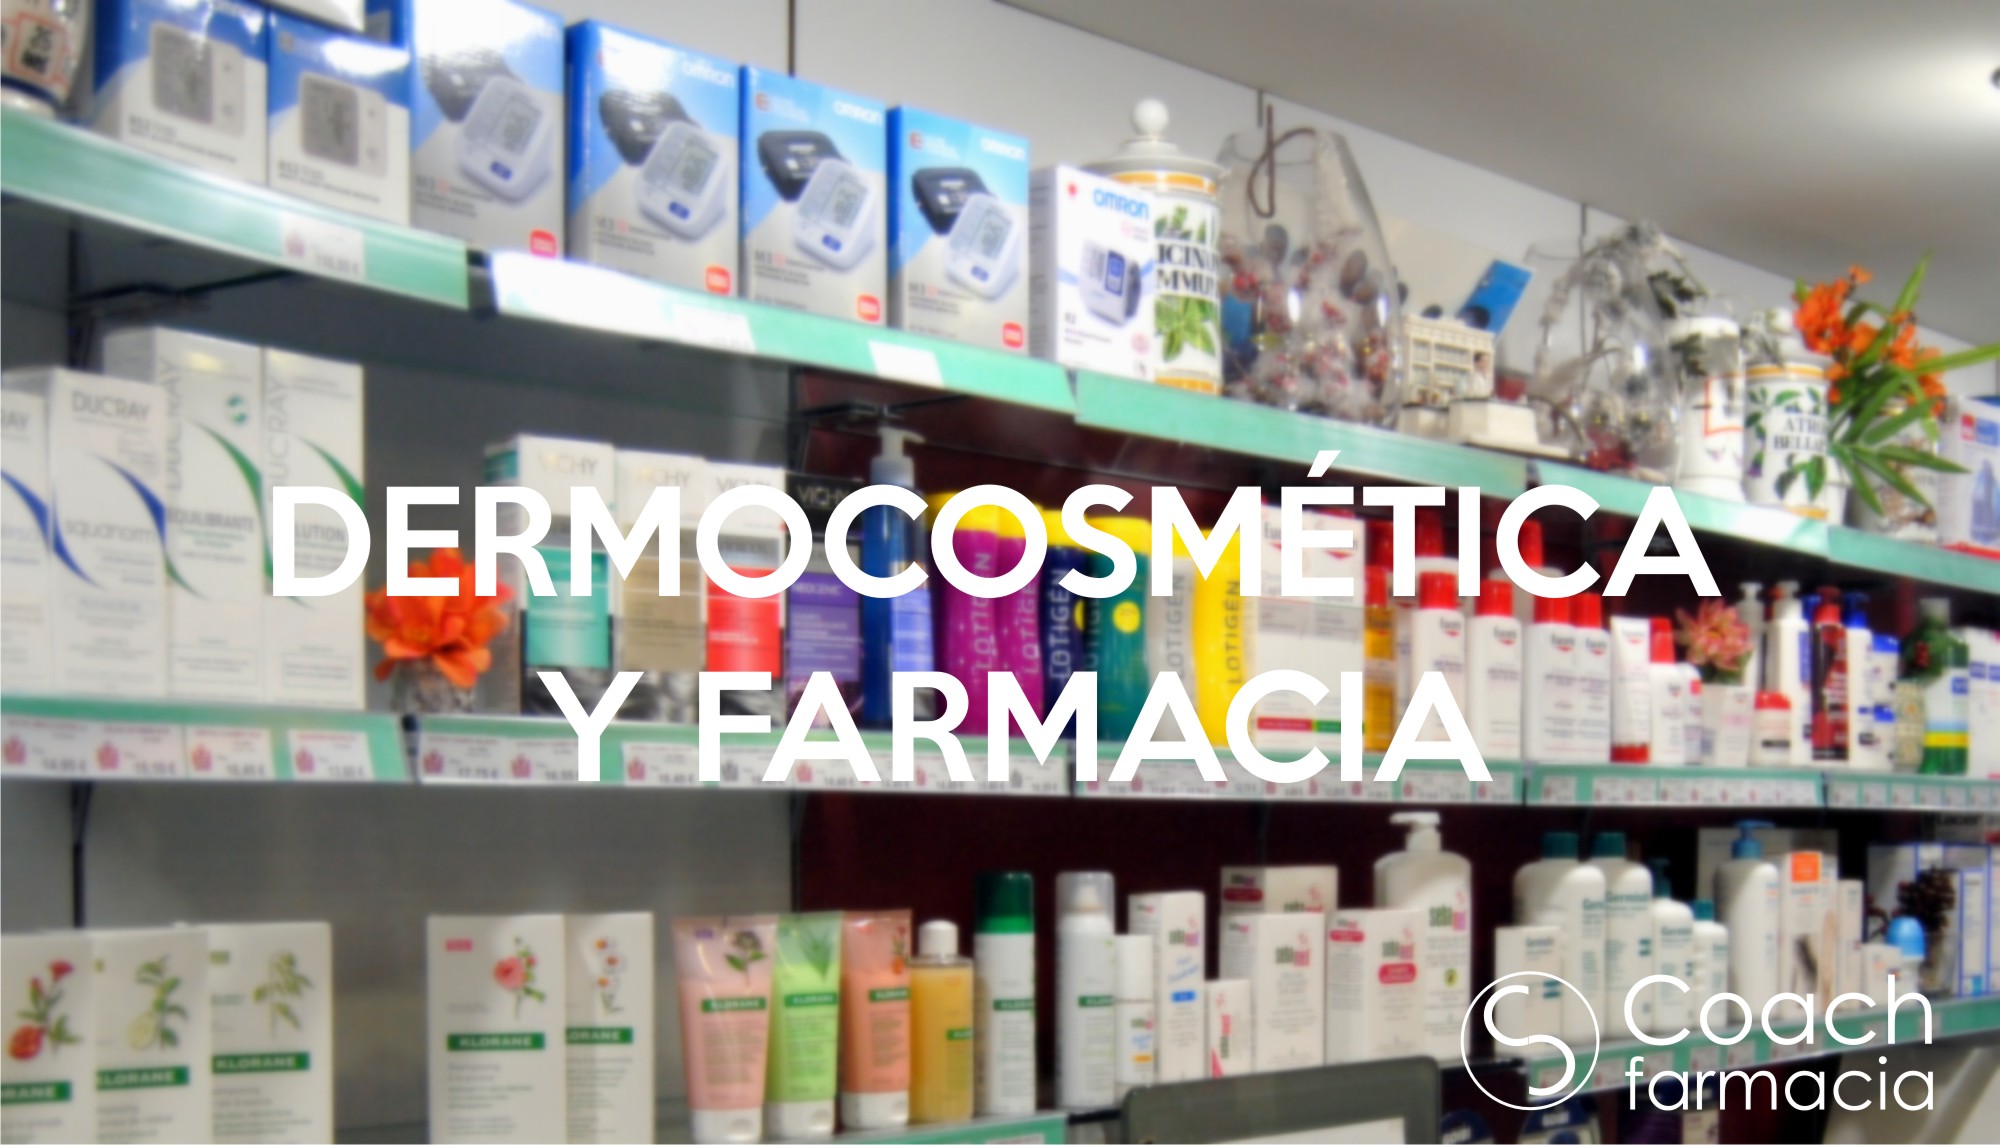 Dermocosmética y farmacia. Un magnífico campo aun por explorar